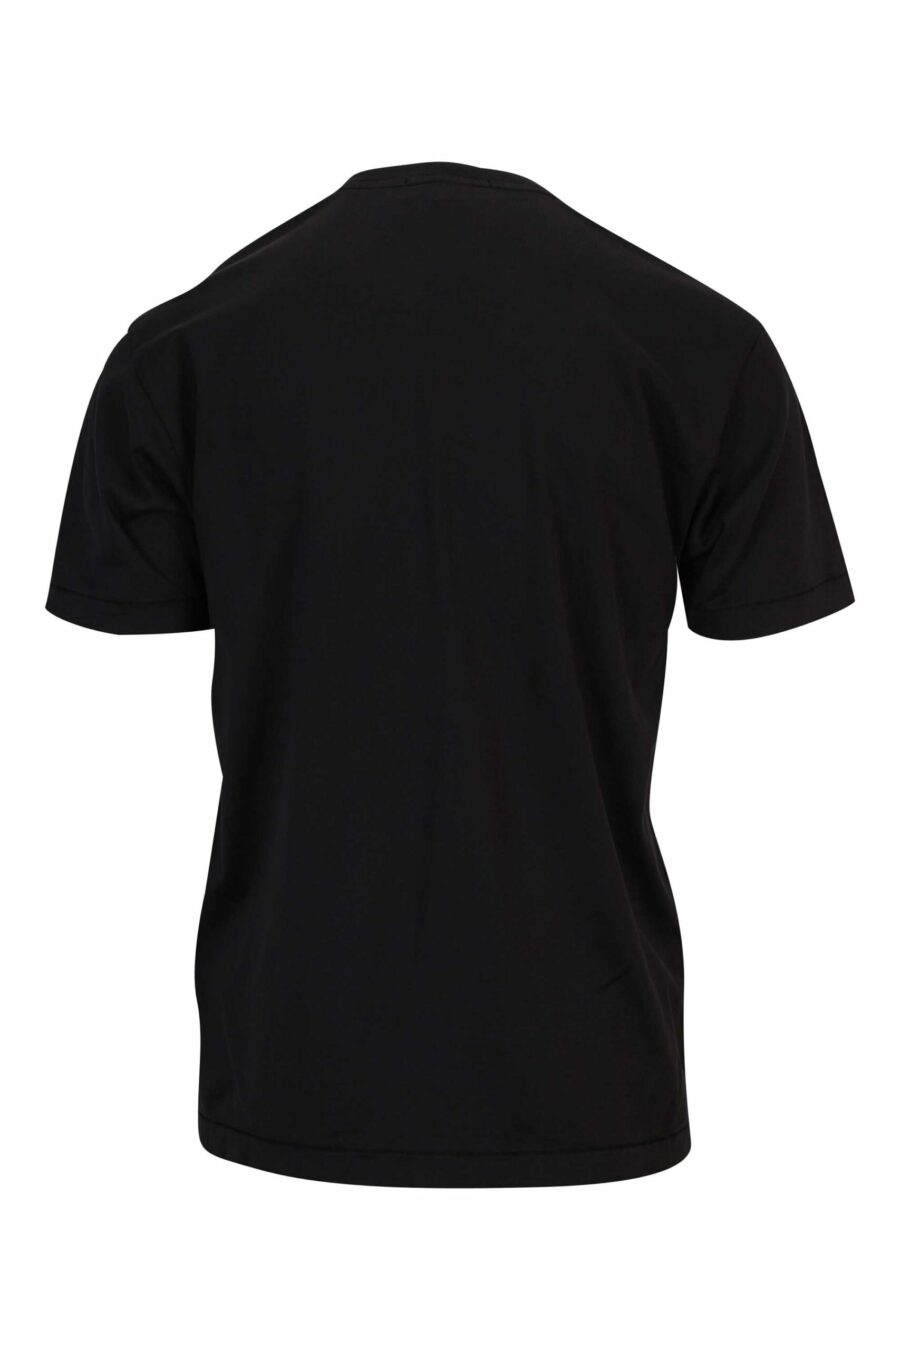 Schwarzes T-Shirt mit Mini-Logo-Kompass-Aufnäher - 8052572851964 1 skaliert